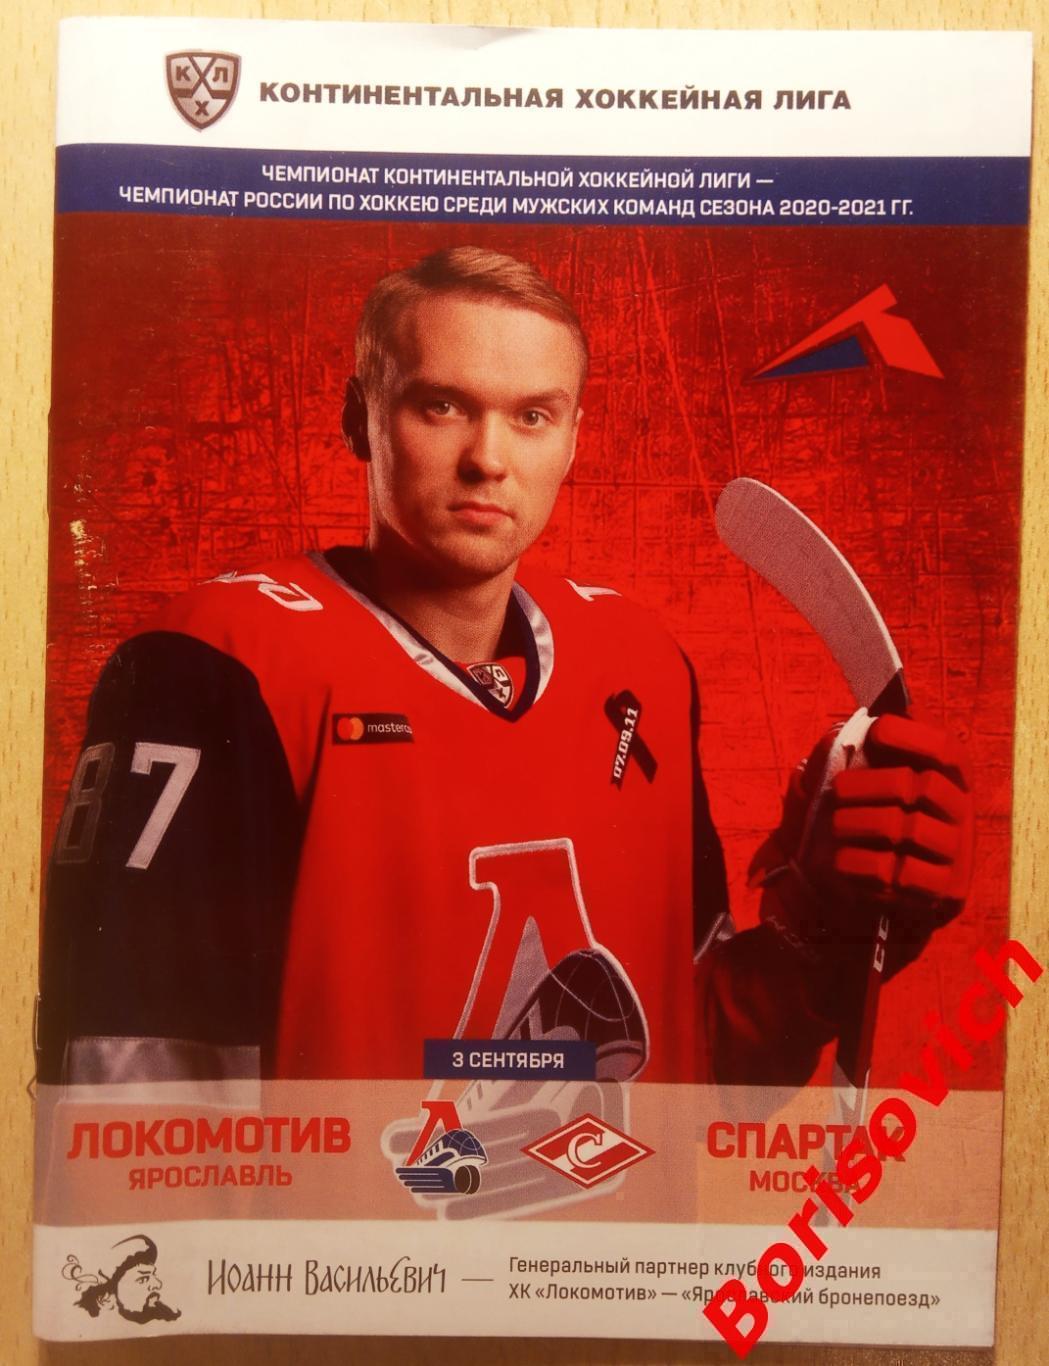 Локомотив Ярославль - Спартак Москва 03-09-2020